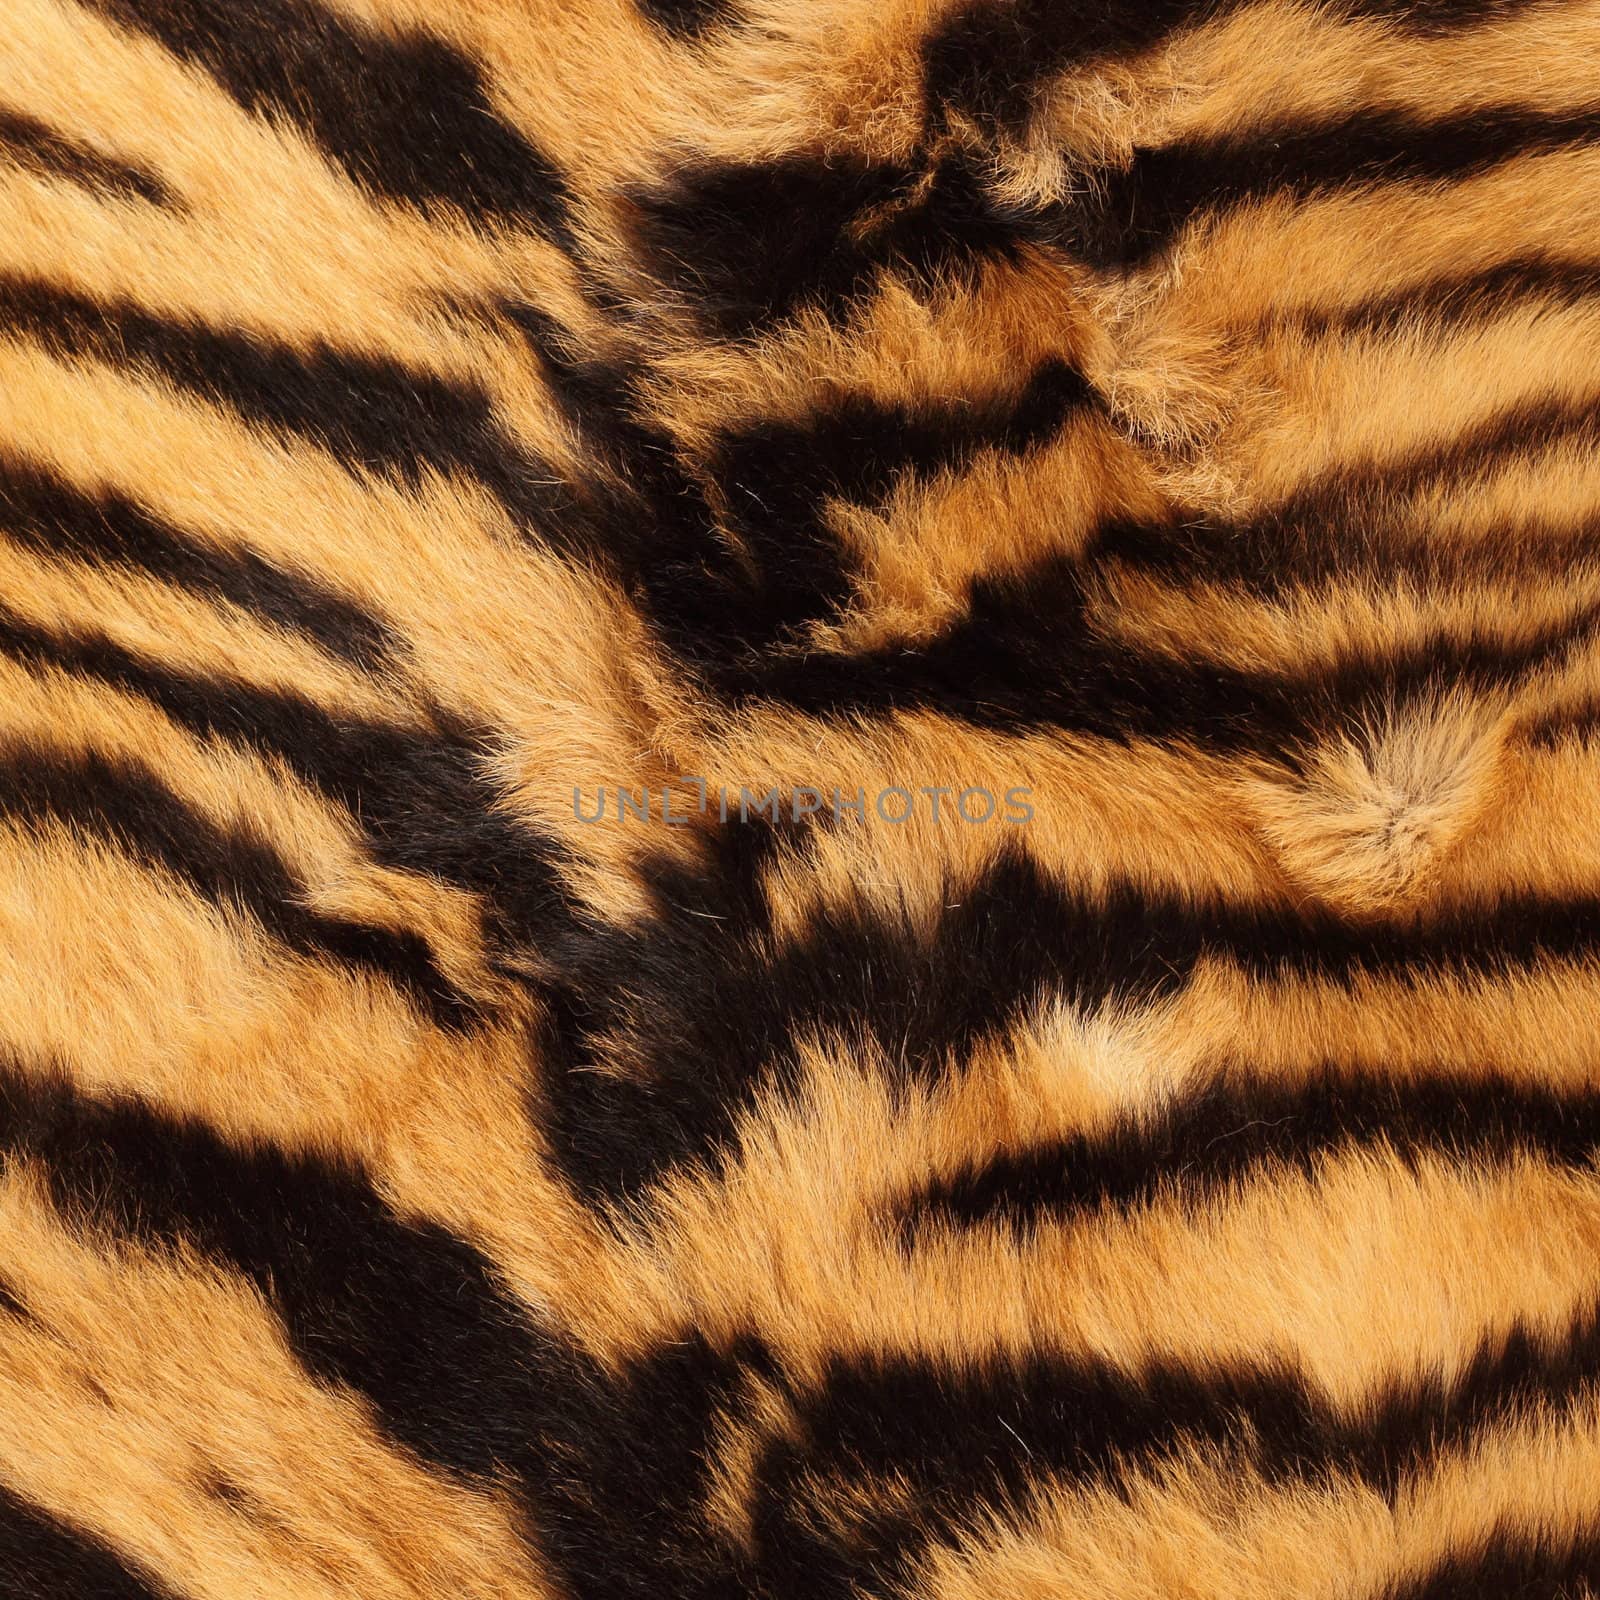 stripes on a tiger pelt by taviphoto